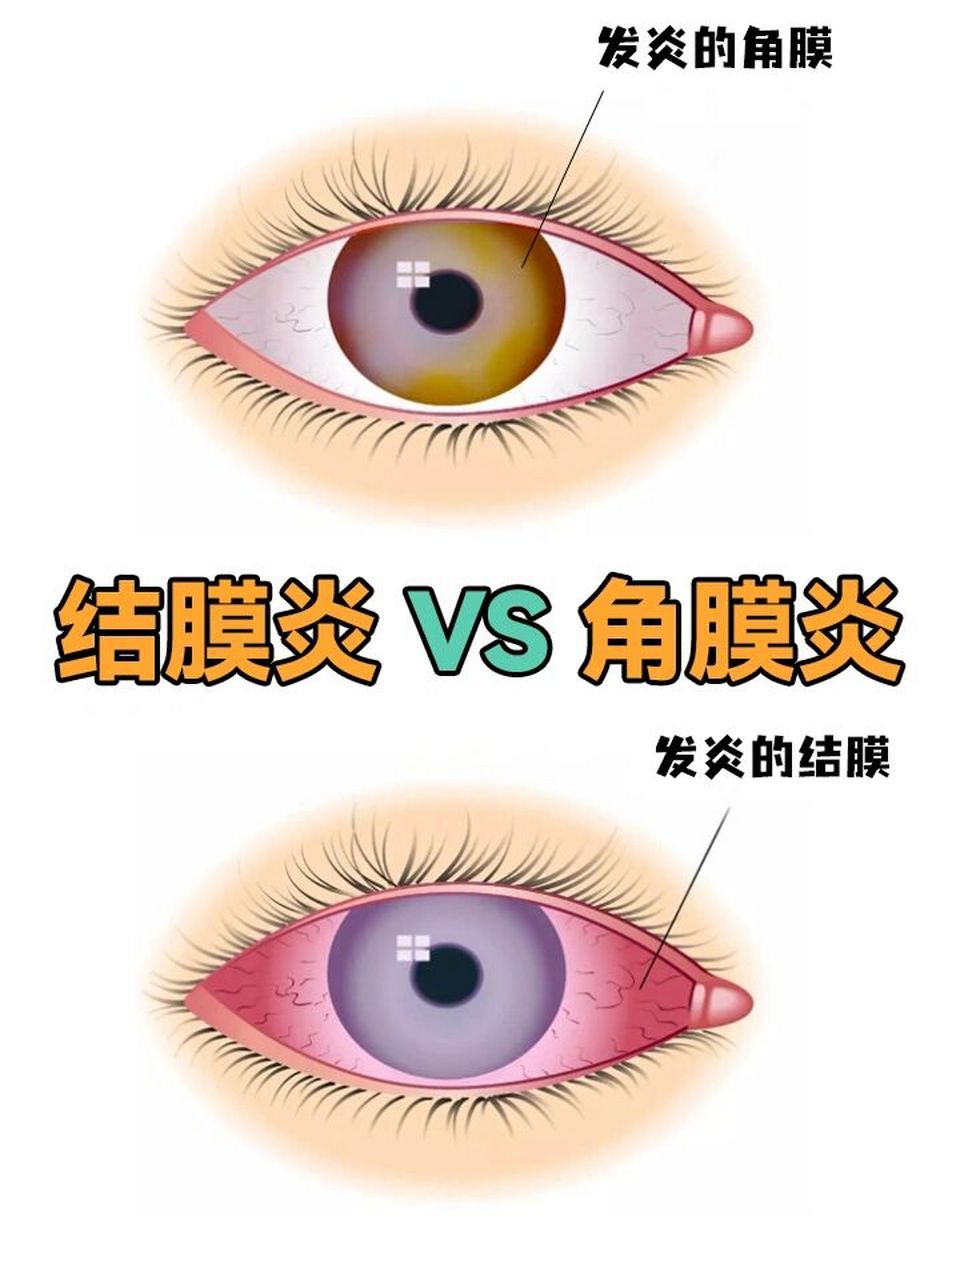 7215其中角膜炎发生在眼睛的黑眼球部位;而结膜炎发生在眼睛的白